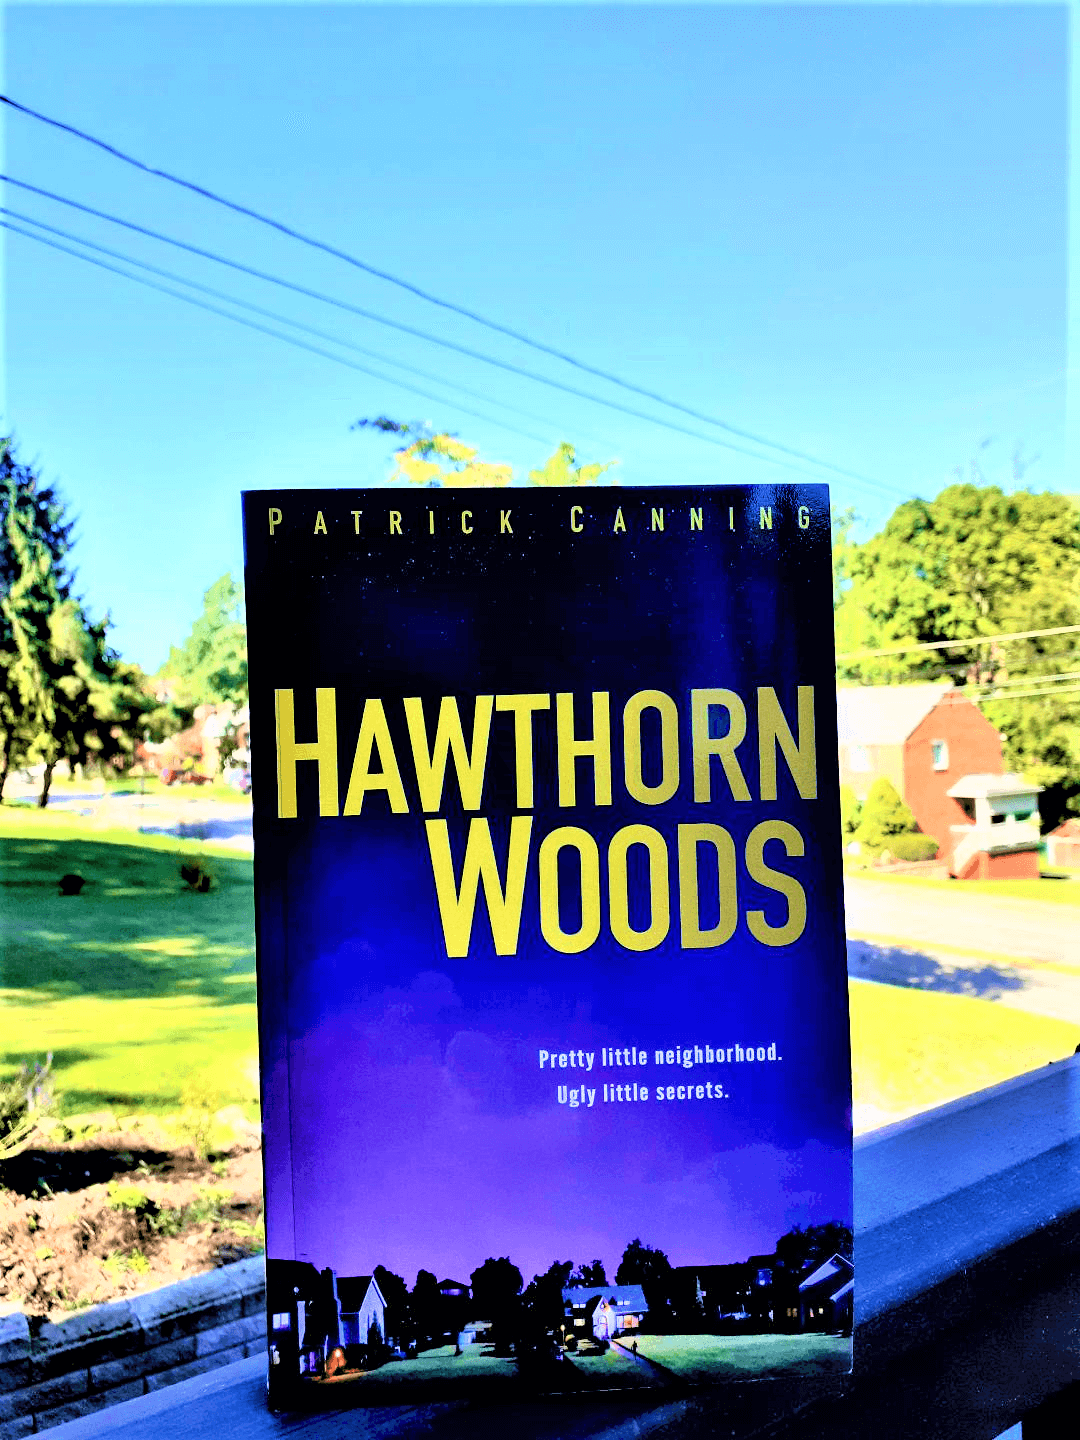 Hawthorn Woods Neighborhood